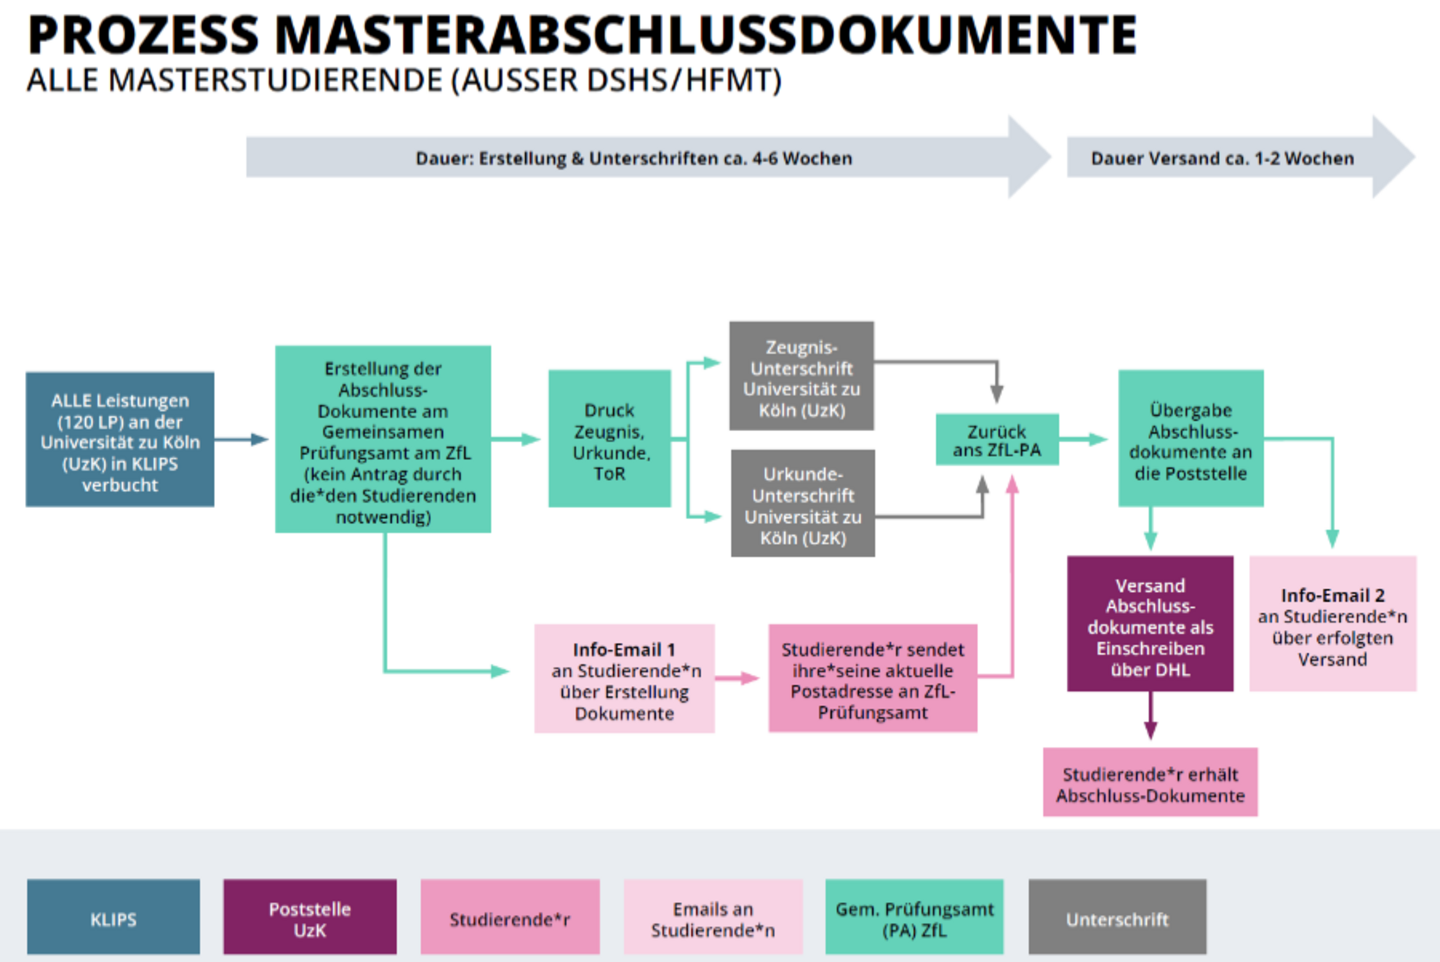 Grafik zum Prozess Masterabschlussdokumente